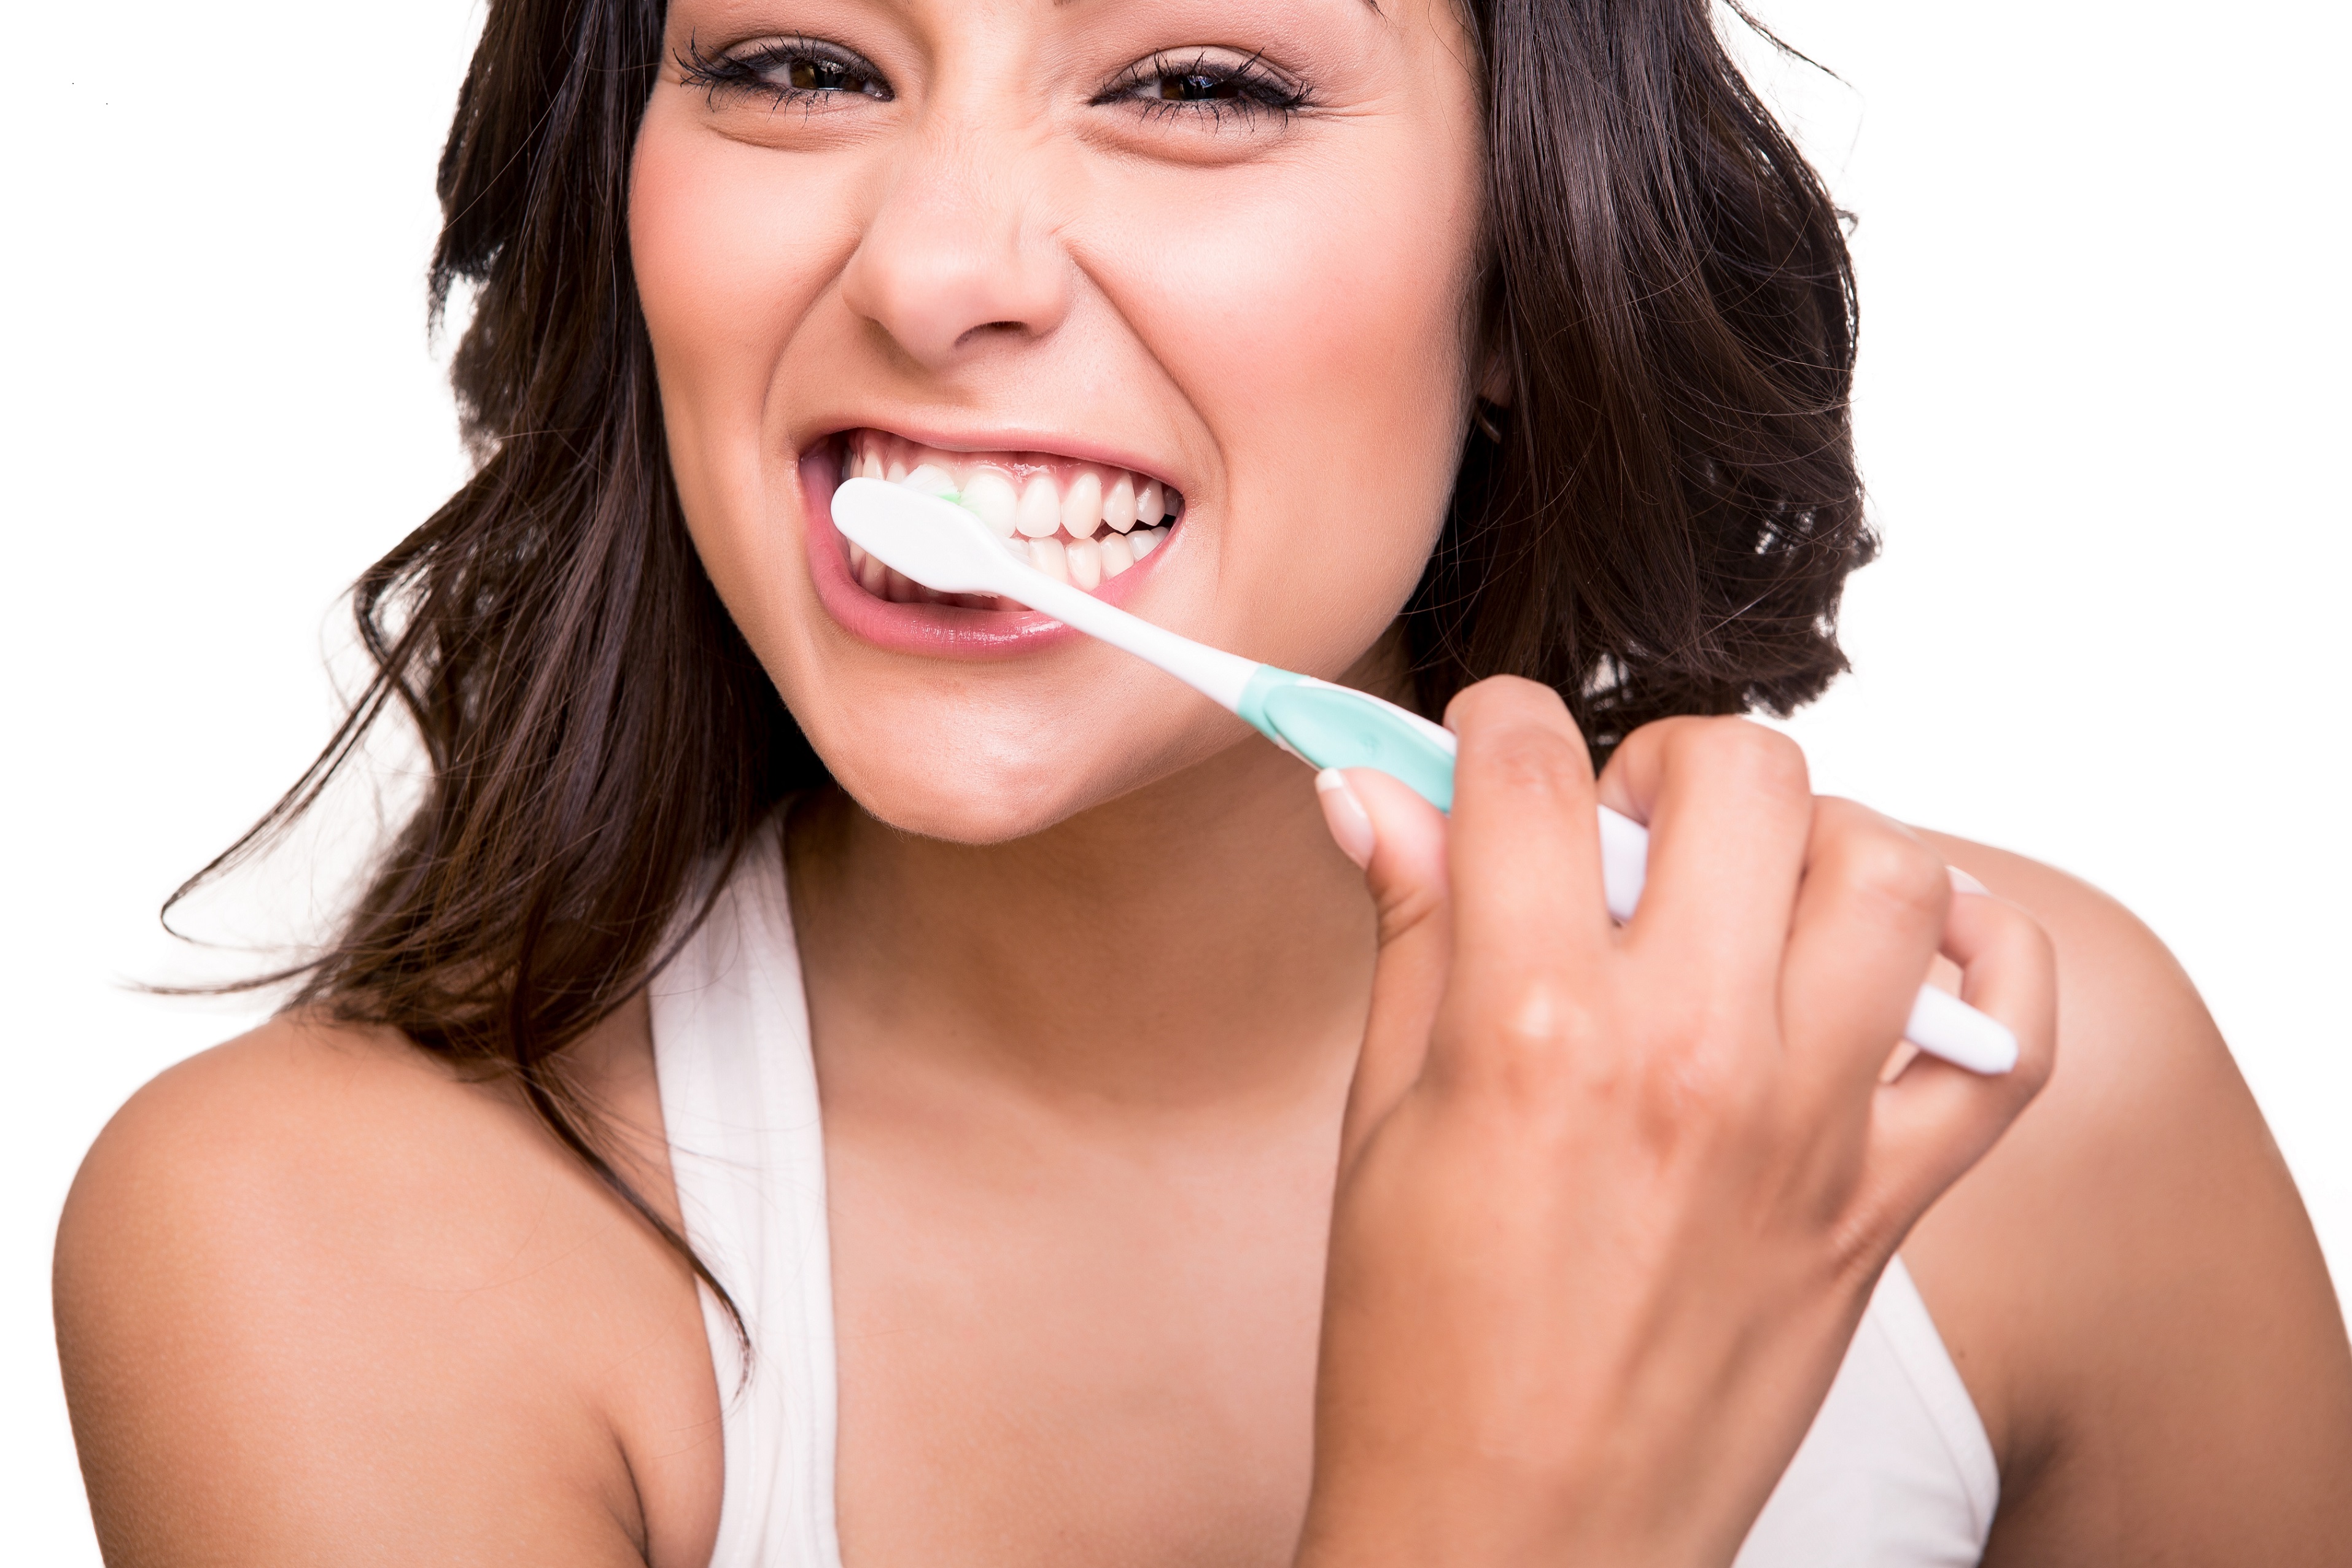 Модель полости рта. Чистим зубы!. Девушка с зубной щеткой. Чистка зубов щеткой. Белоснежная улыбка и зубная щетка.